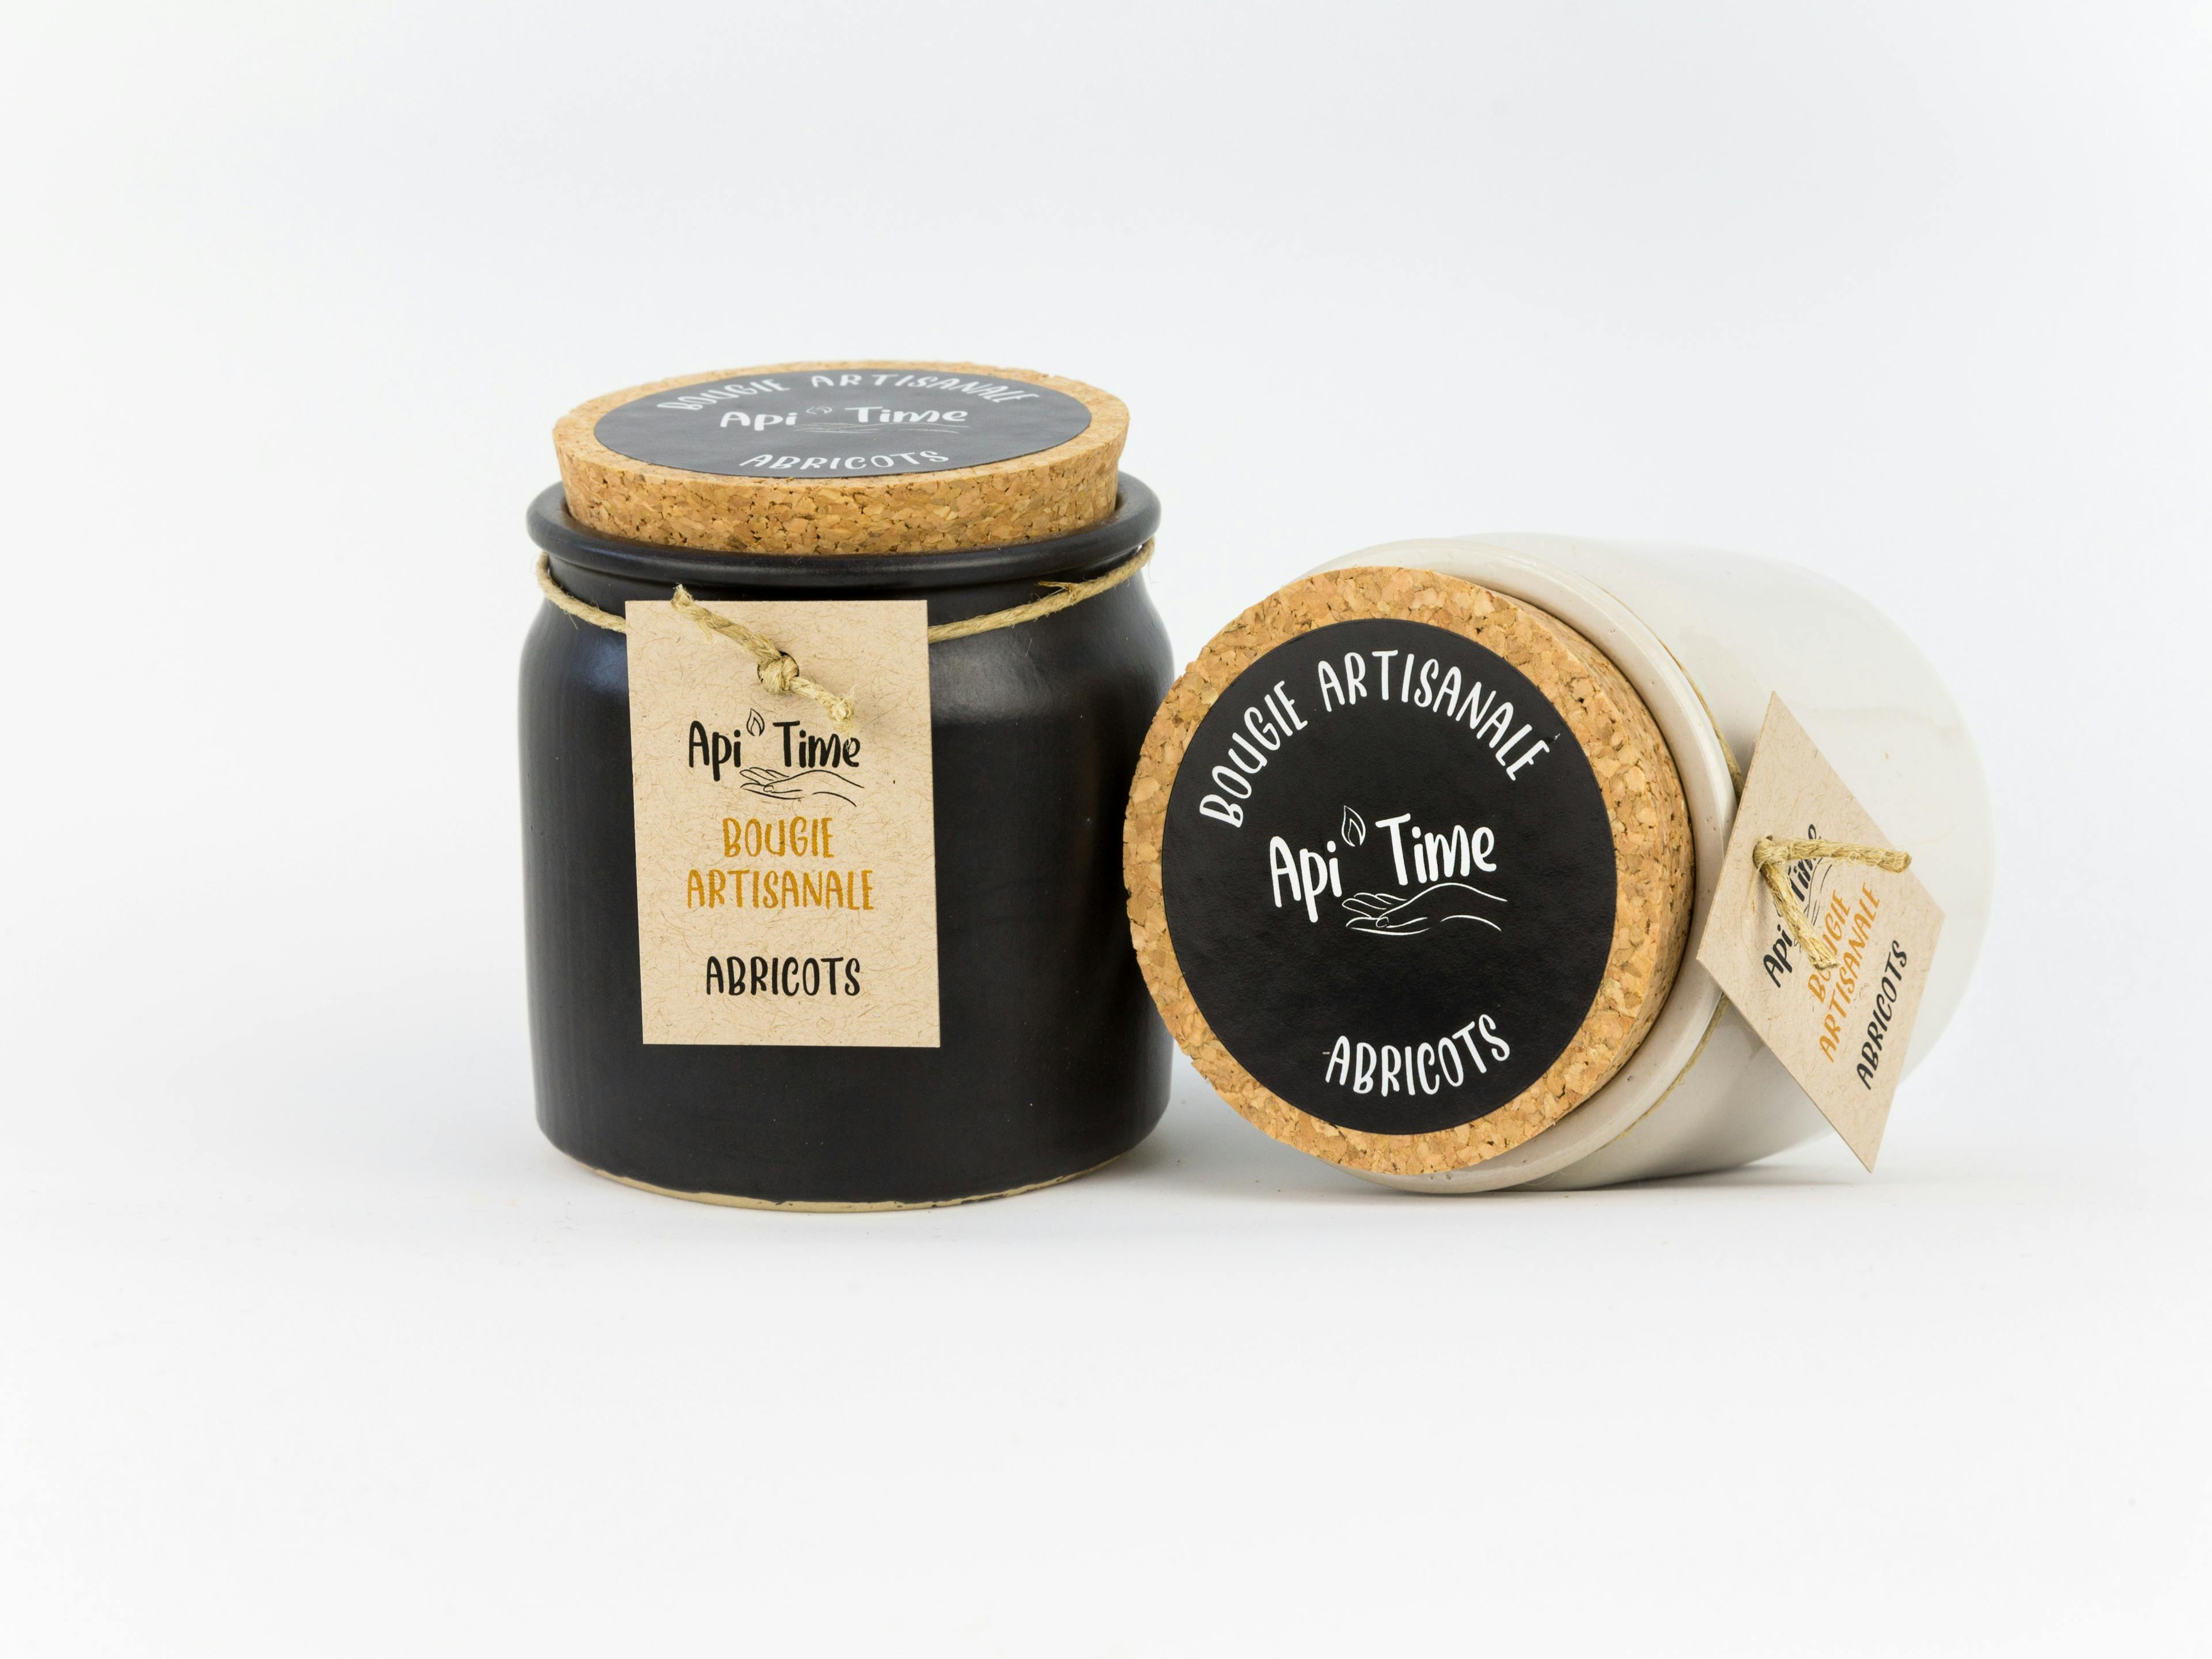 Bougies en pot céramique, parfum Abricot, produit artisanal en vente directe en Suisse